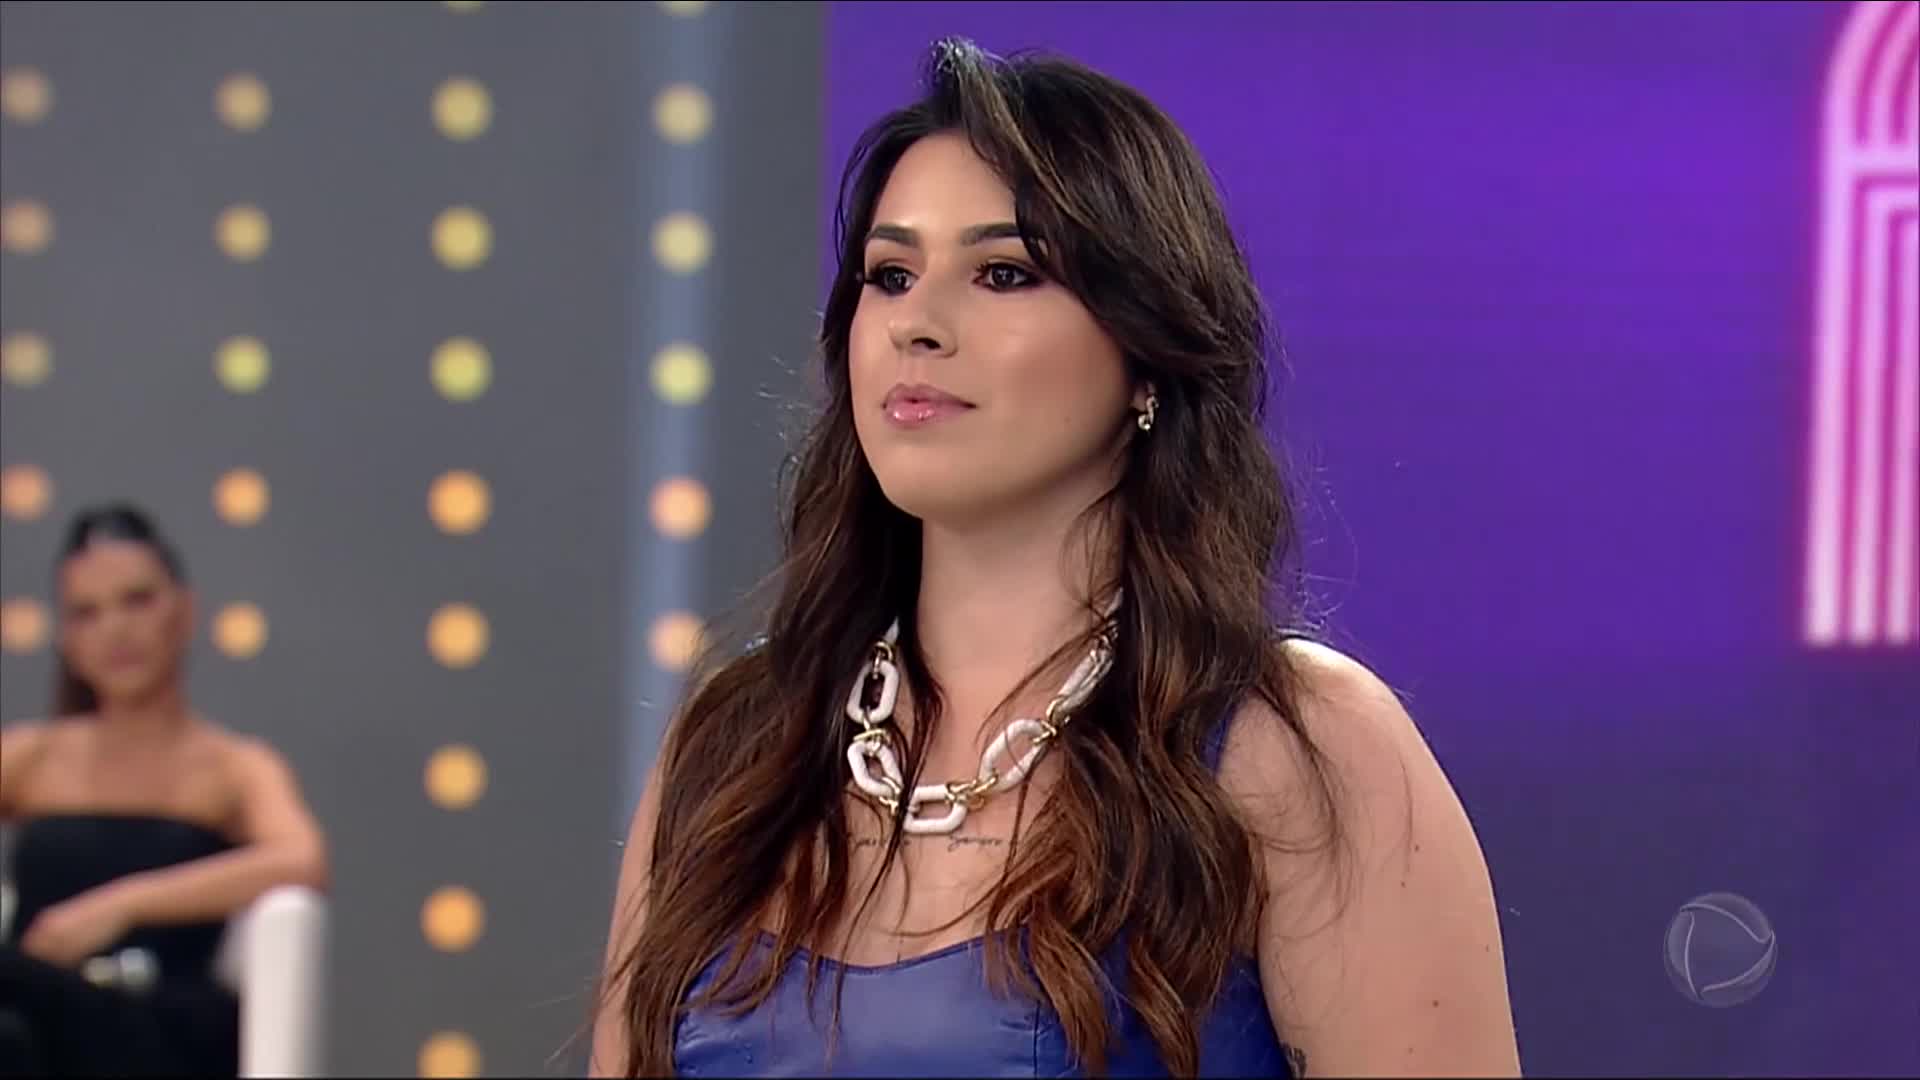 Vídeo: Giovanna Noronha canta "Ciumeira", sucesso de Marília Mendonça | Pronto Pra Fama